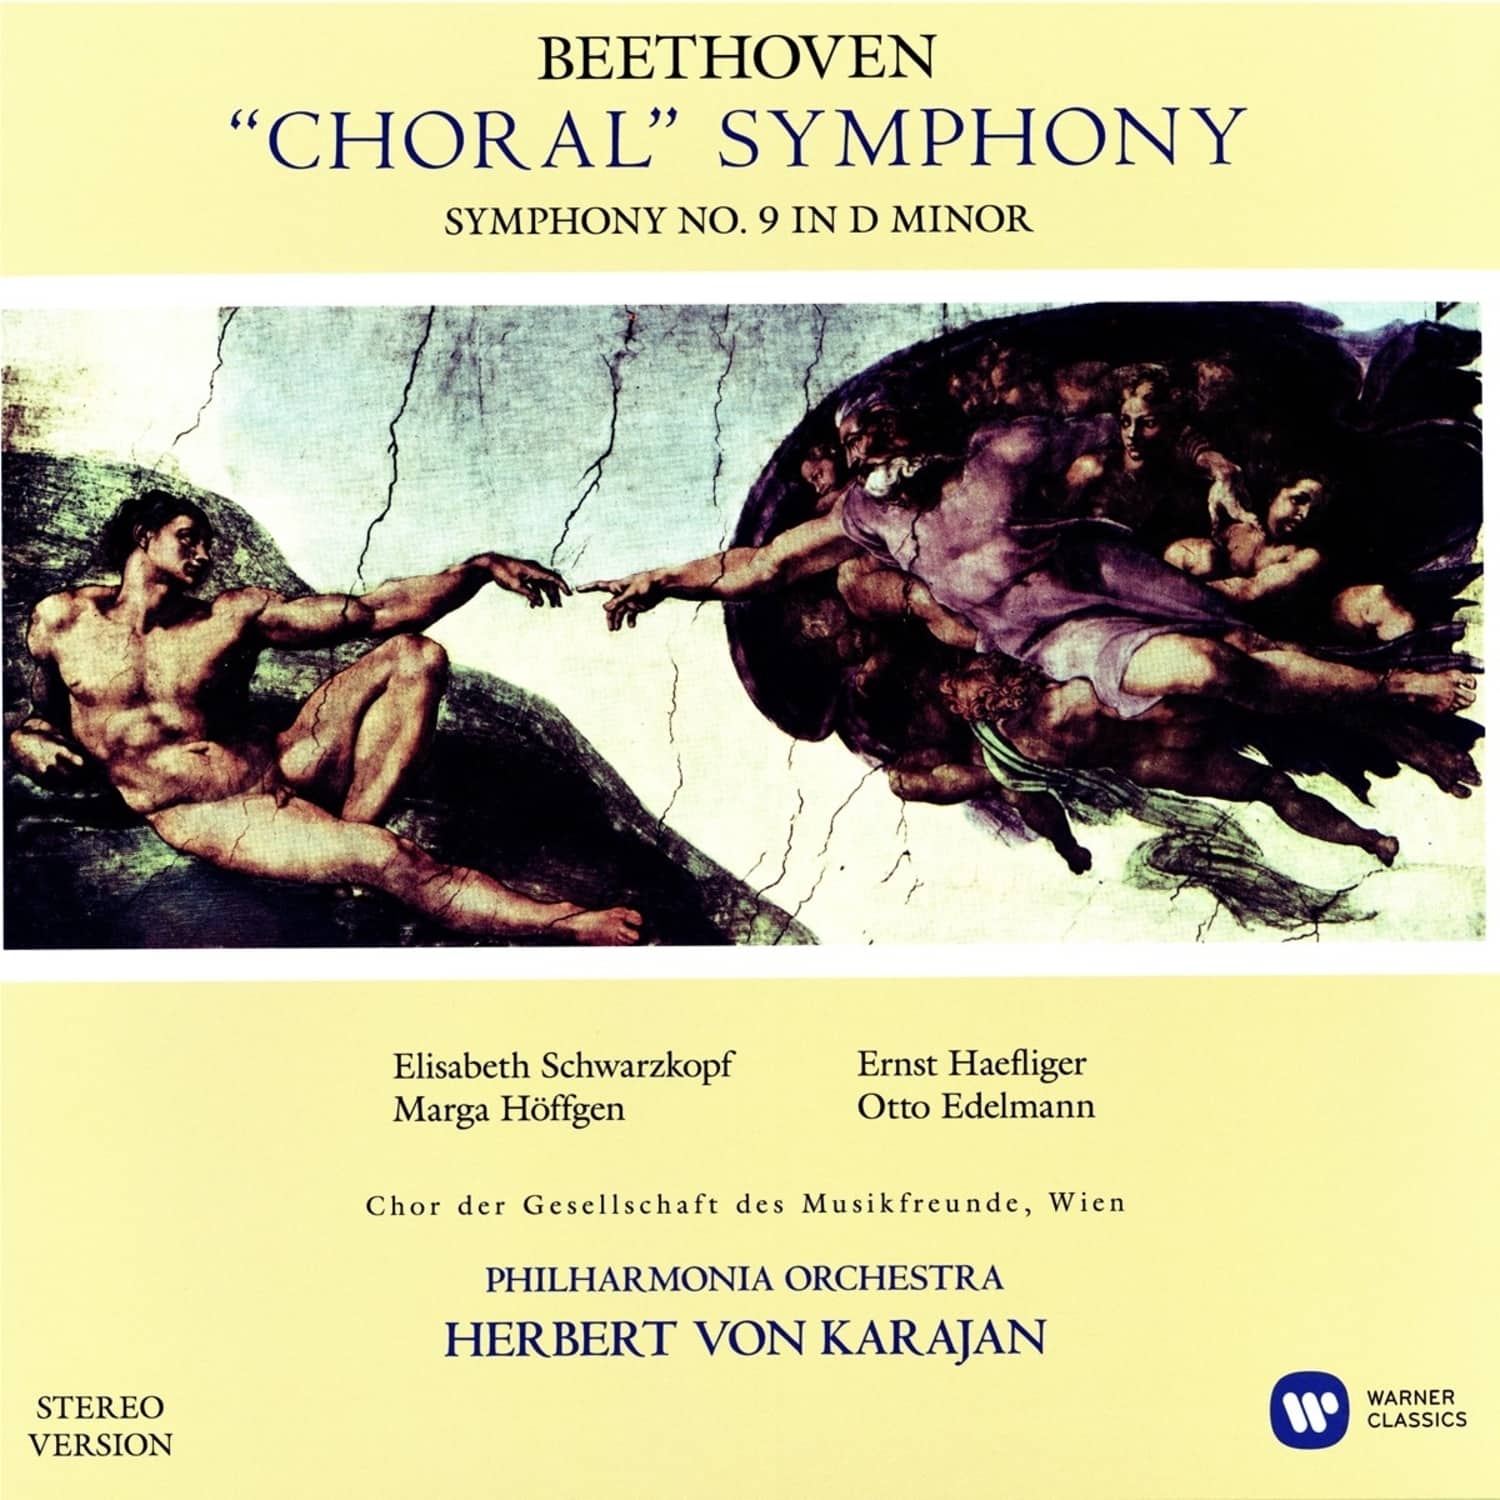 Herbert von Karajan /Ludwig van Beethoven - SINFONIE 9 